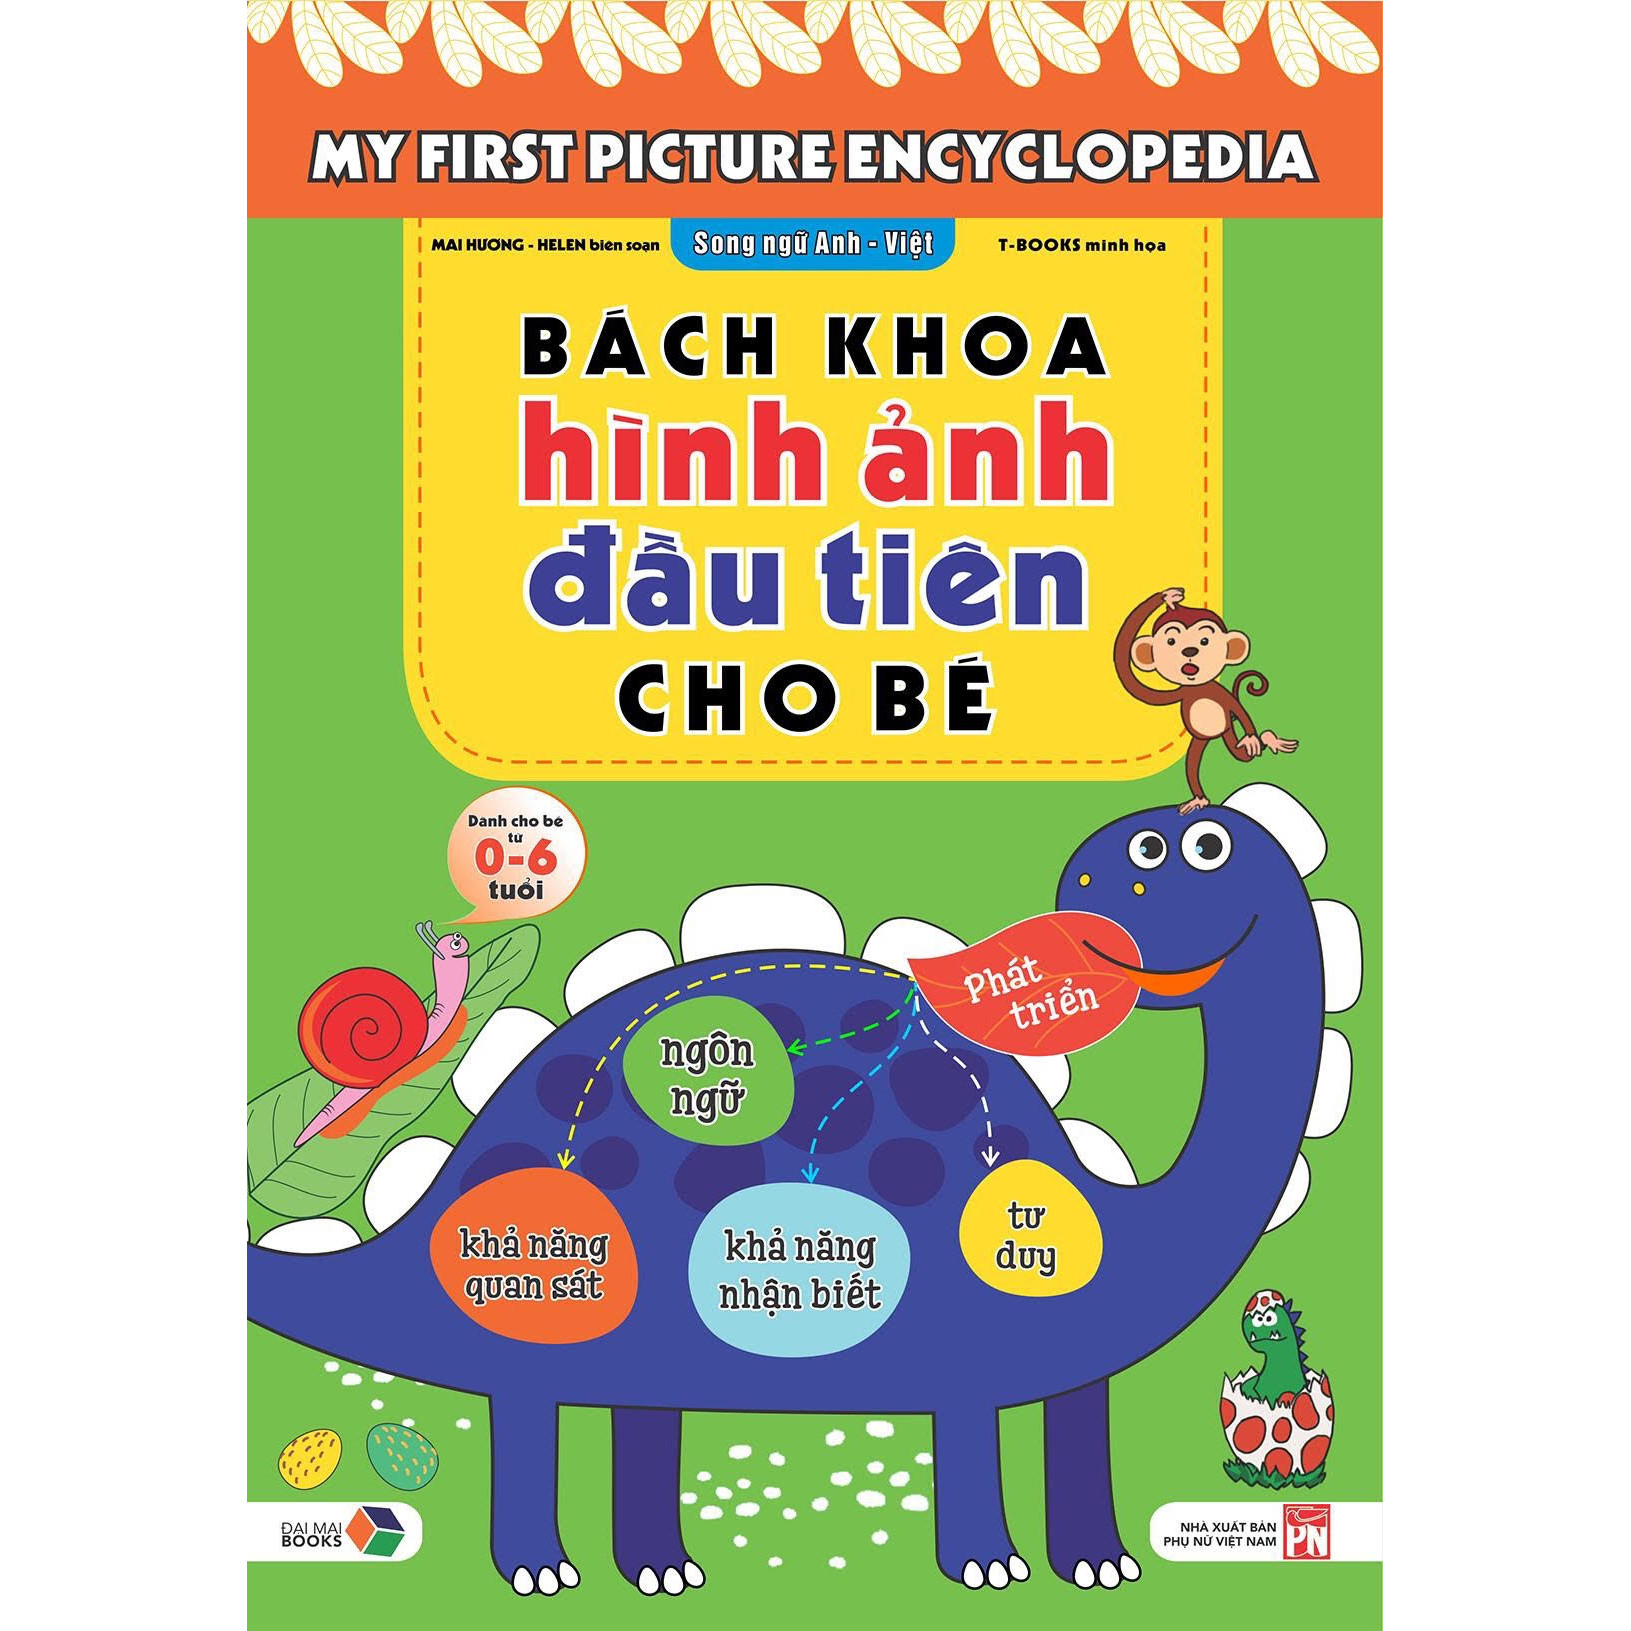 Bách khoa hình ảnh đầu tiên cho bé , song ngữ Anh - Việt , dành cho bé 0-6 tuổi My First picture encyclopedia bìa cứng